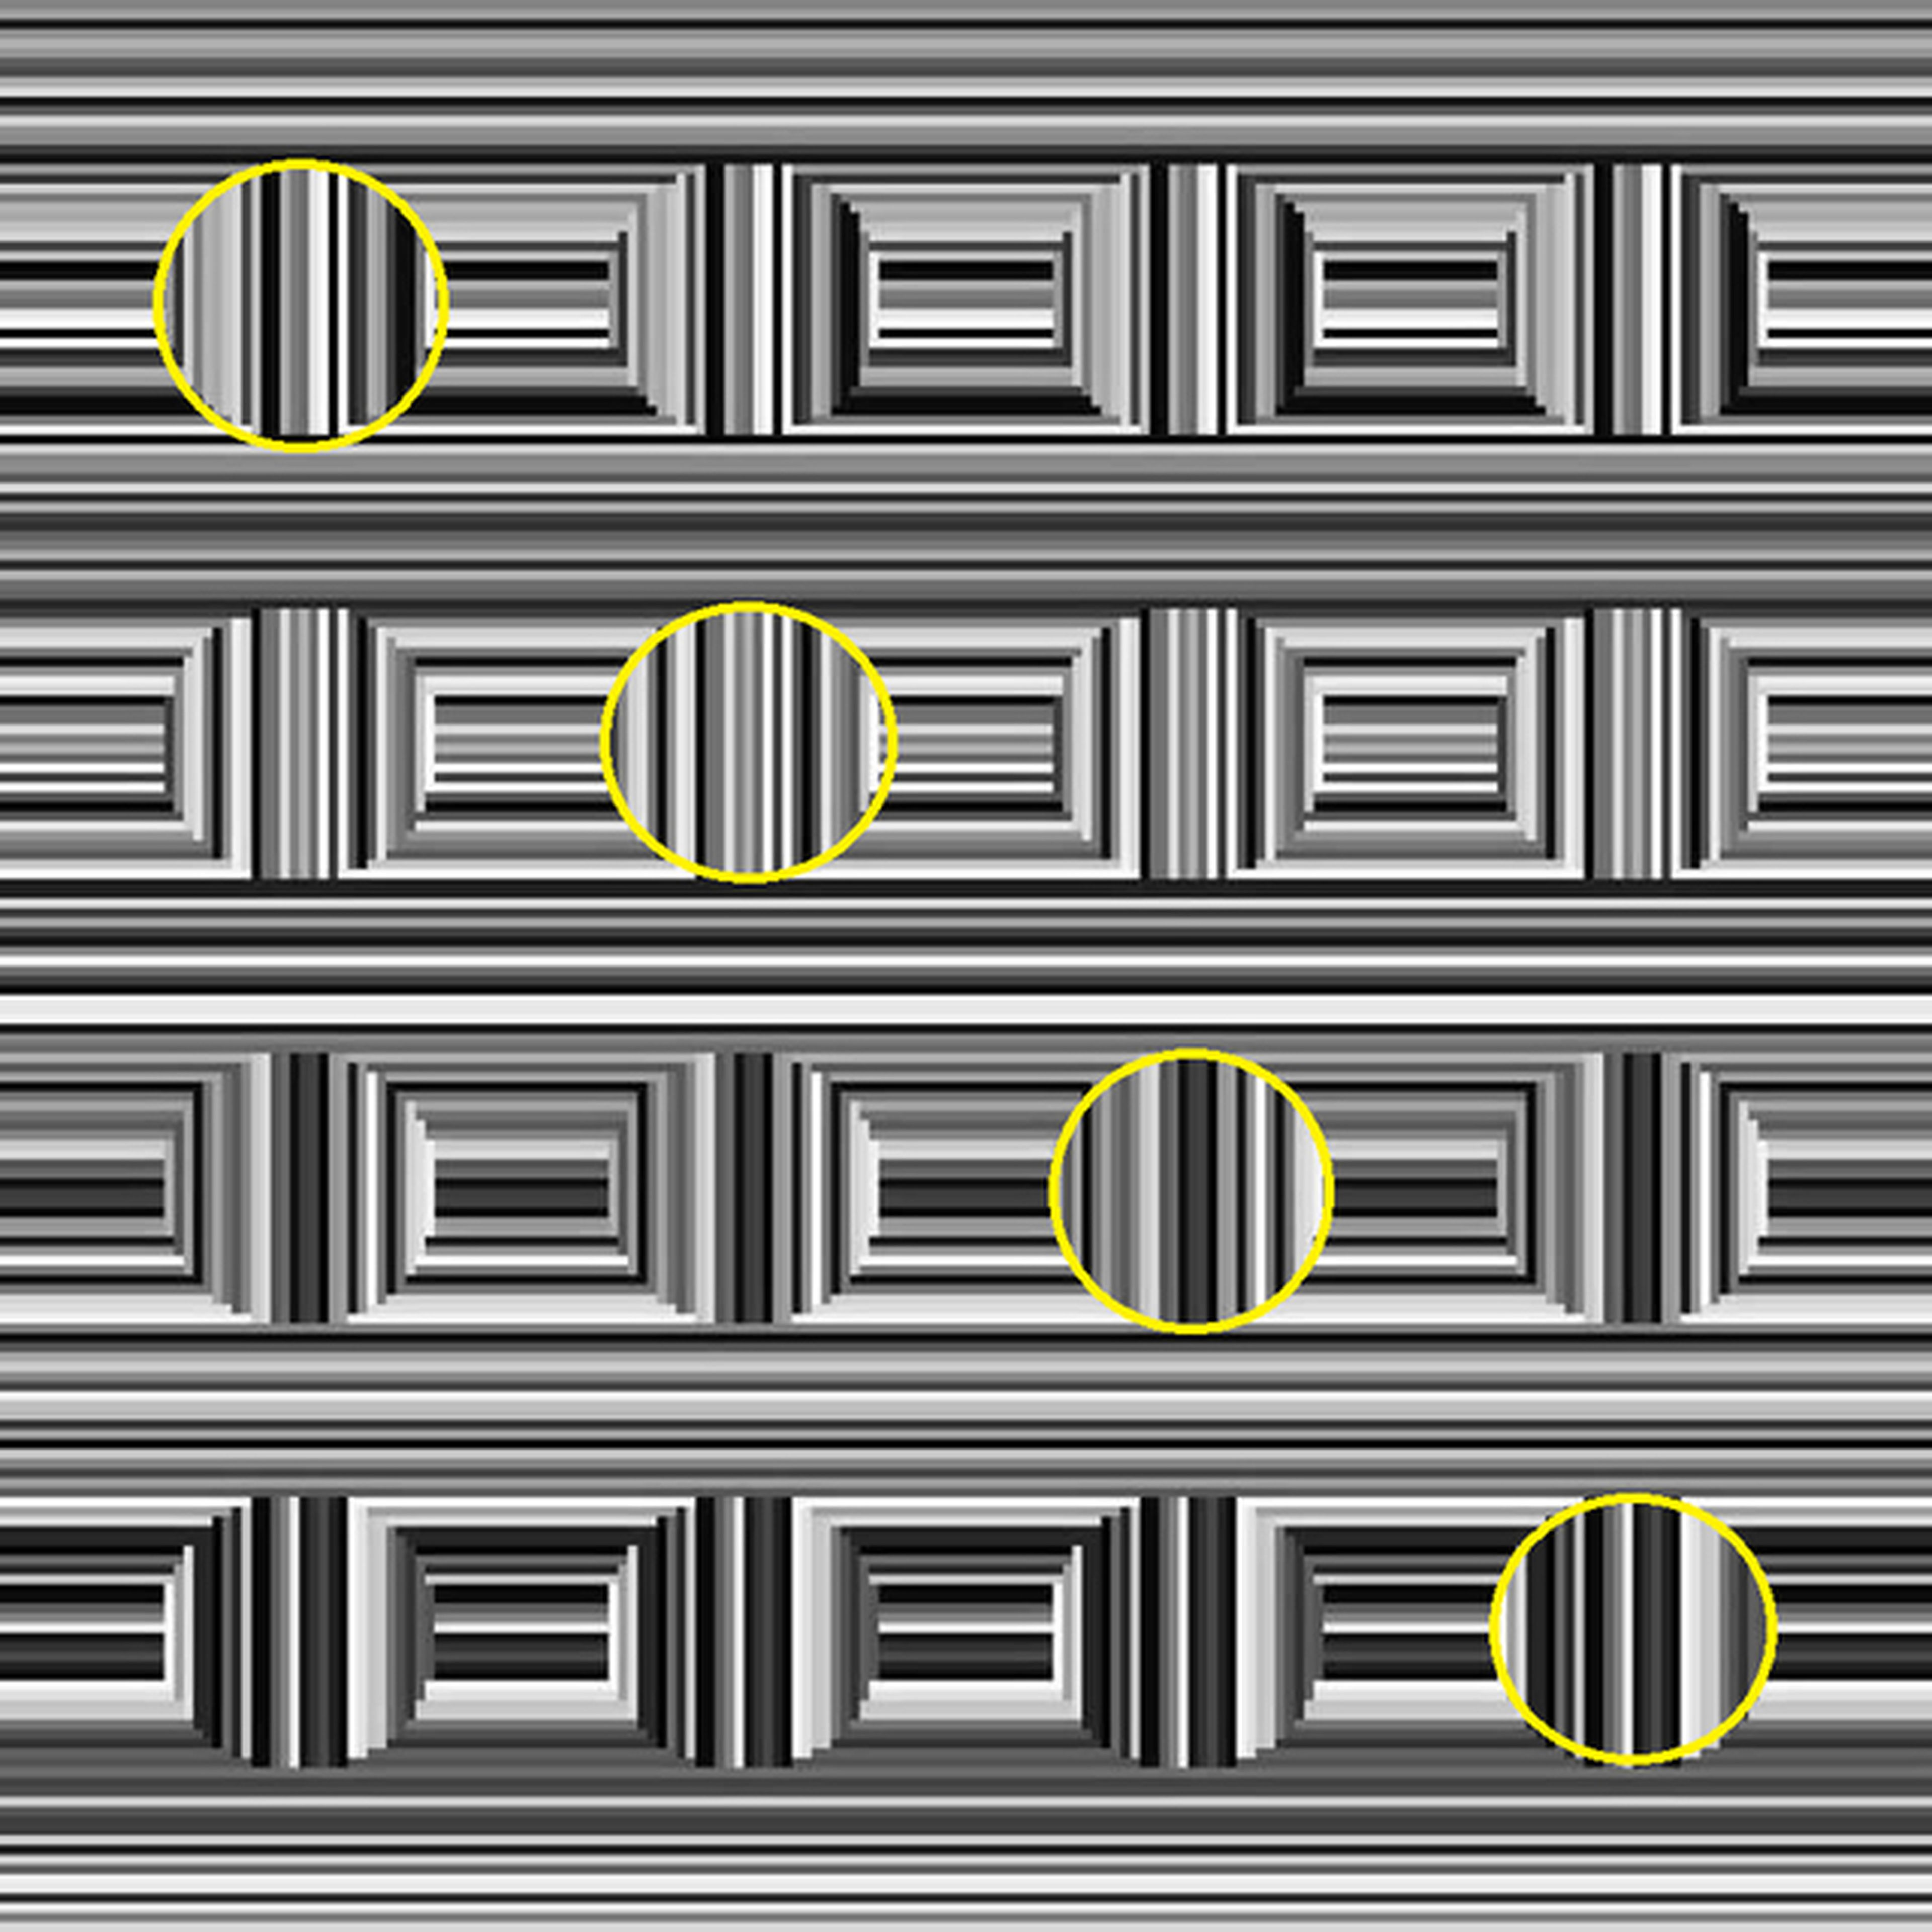 Solución a la ilusión óptica de Coffer